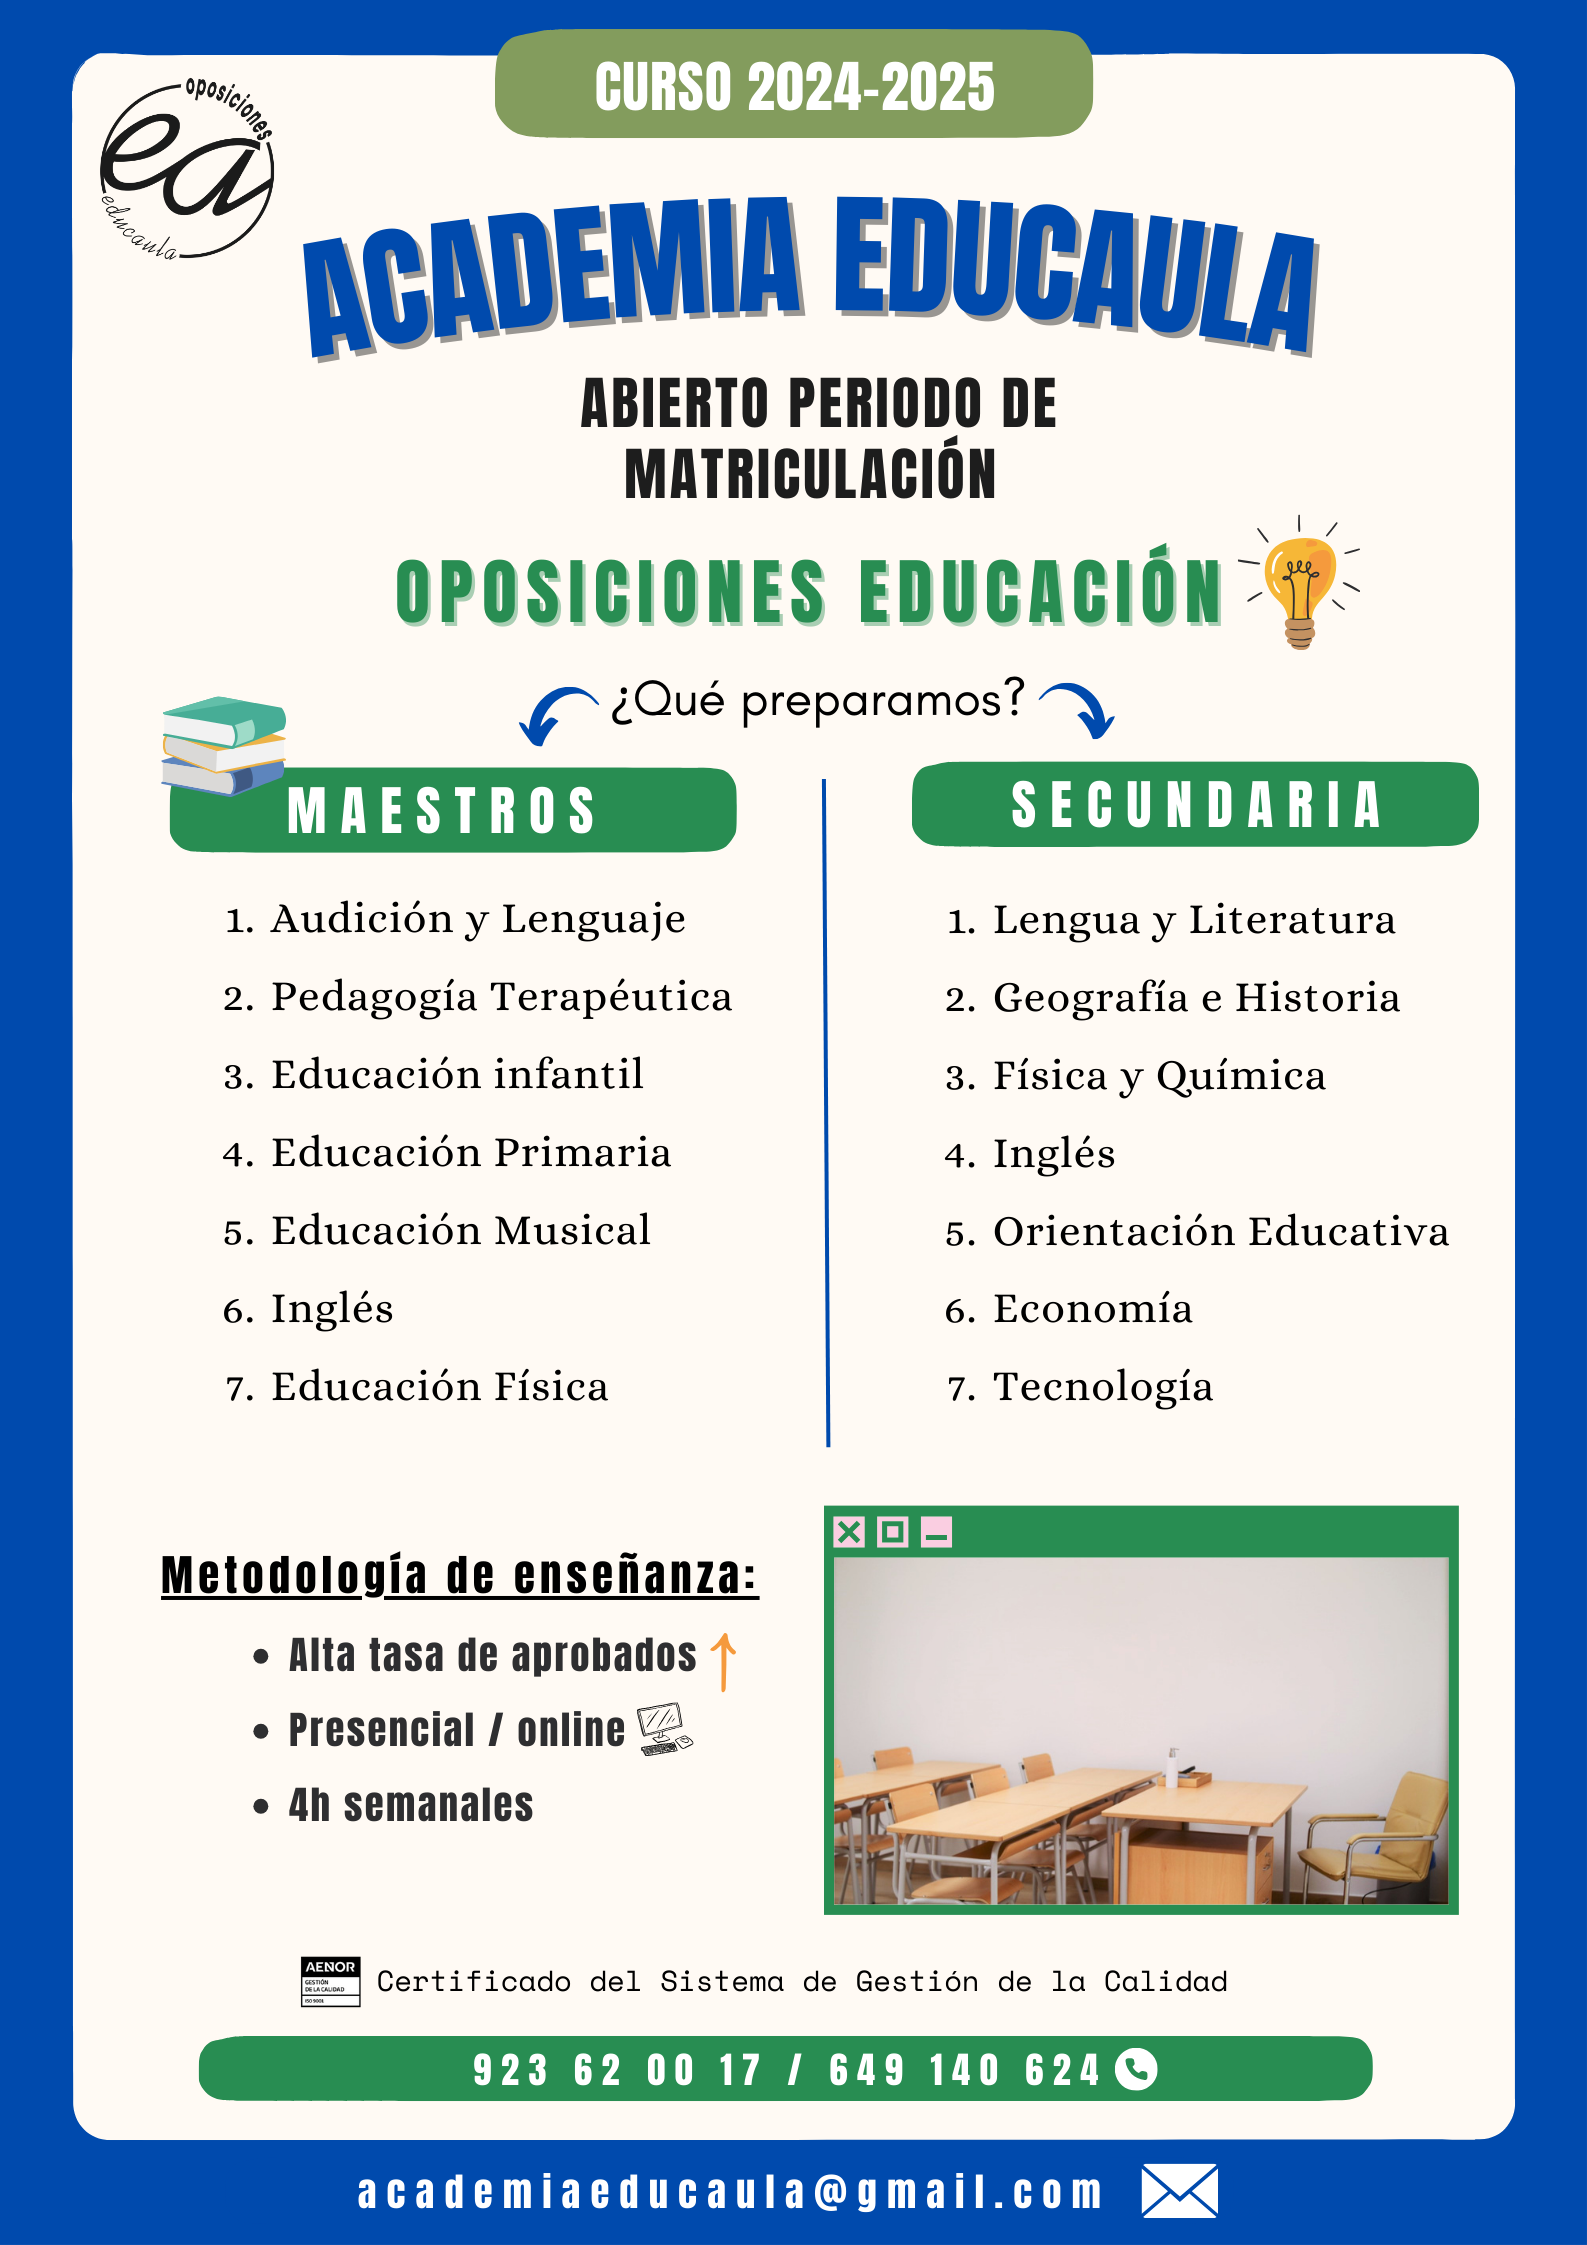 ACADEMIA EDUCAULA: PREPARACIÓN DE OPOSICIONES CUERPOS DOCENTES 2024-25